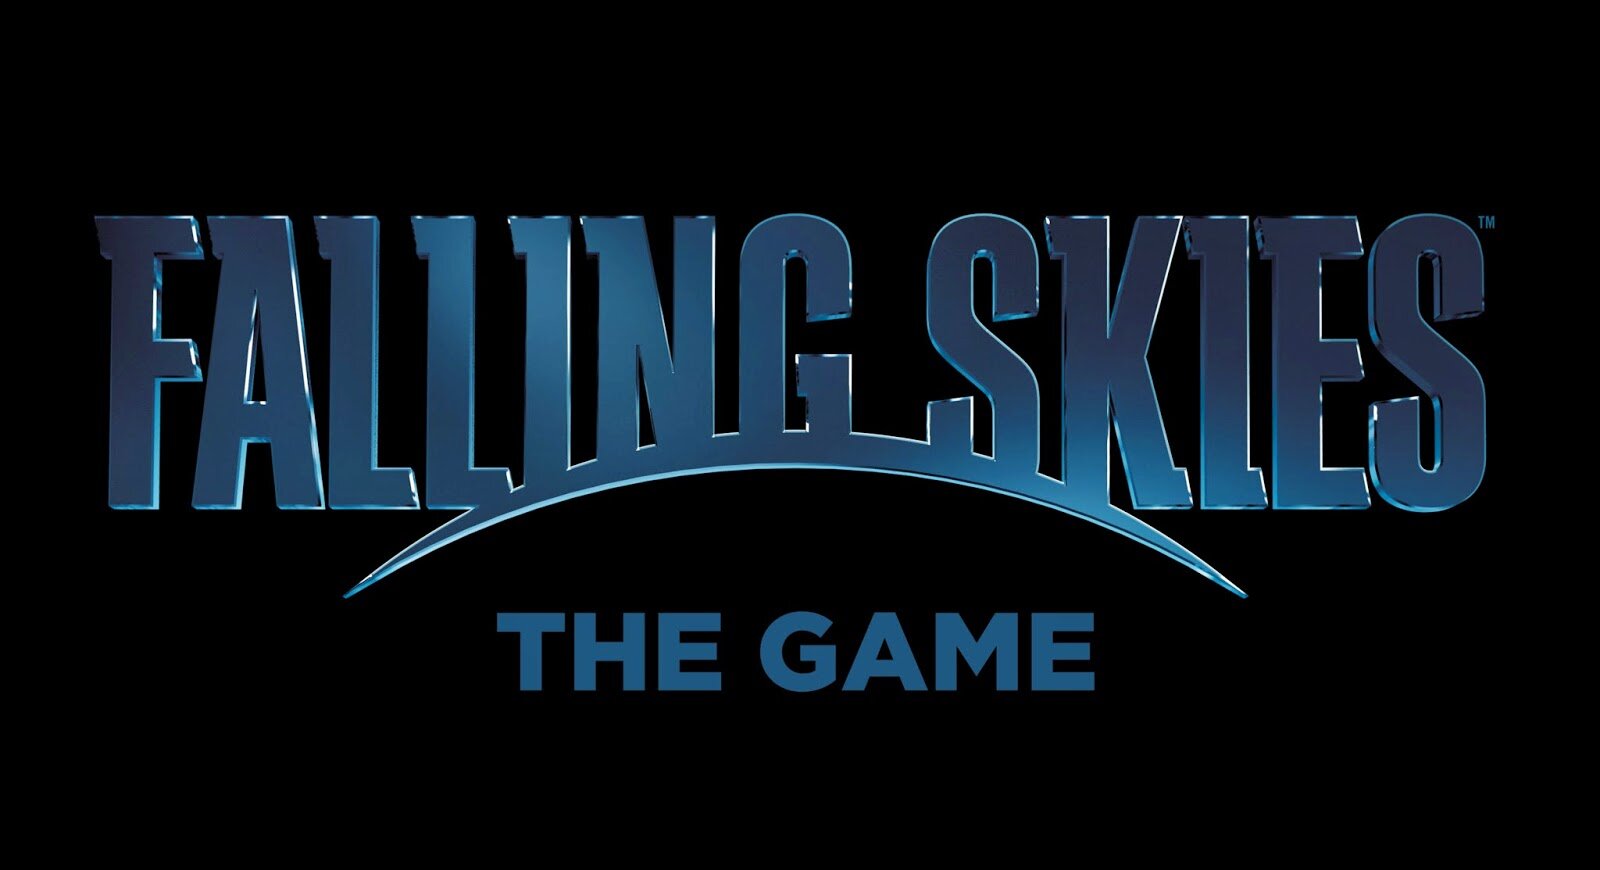 Falling Skies Logo